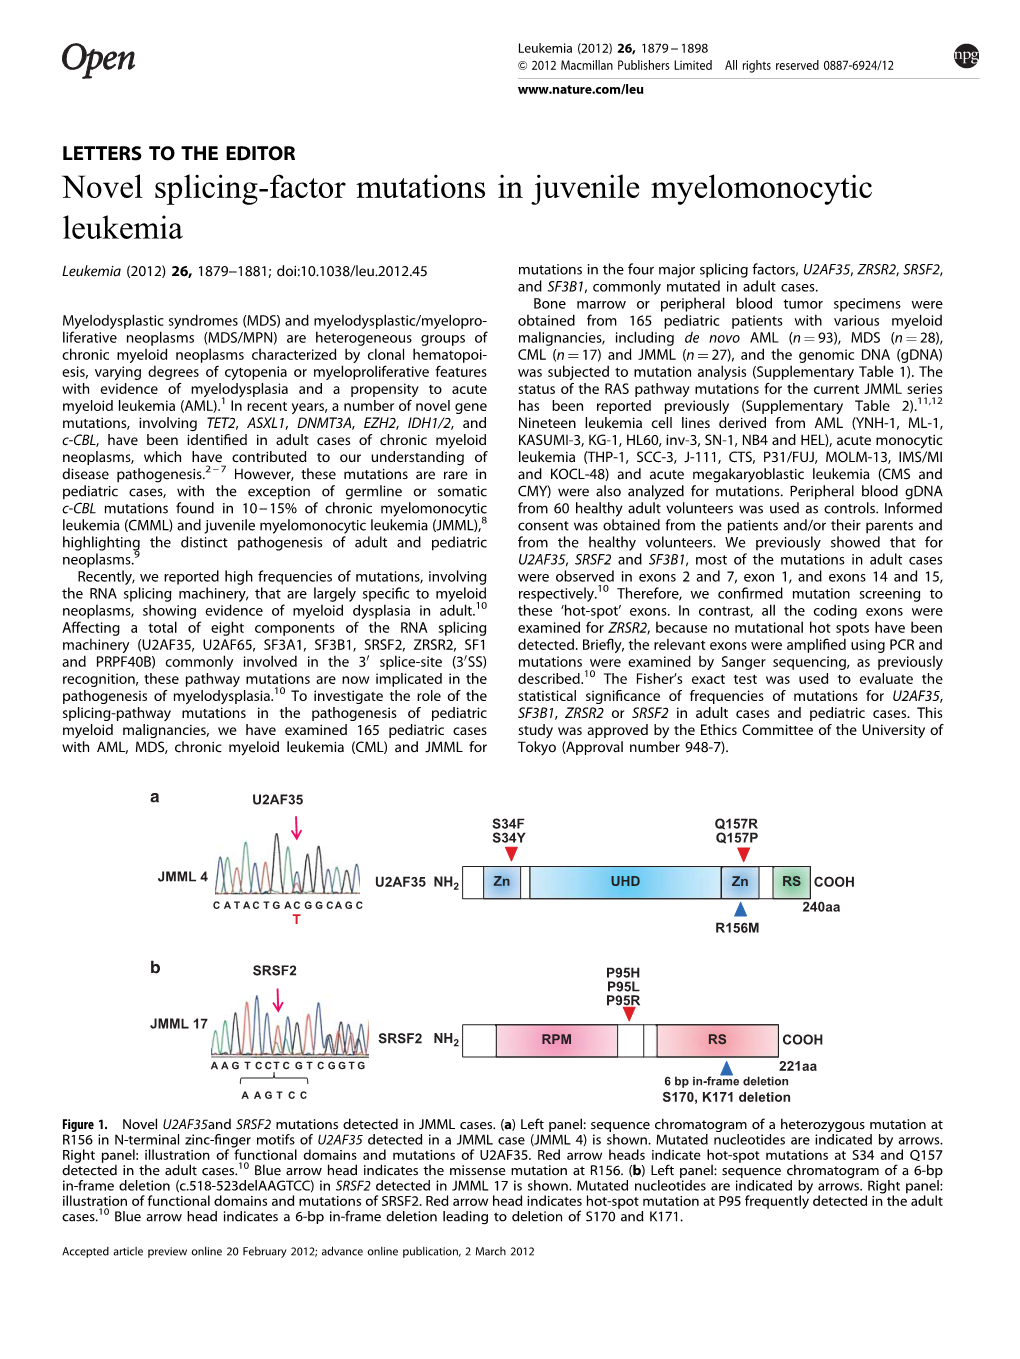 Novel Splicing-Factor Mutations in Juvenile Myelomonocytic Leukemia